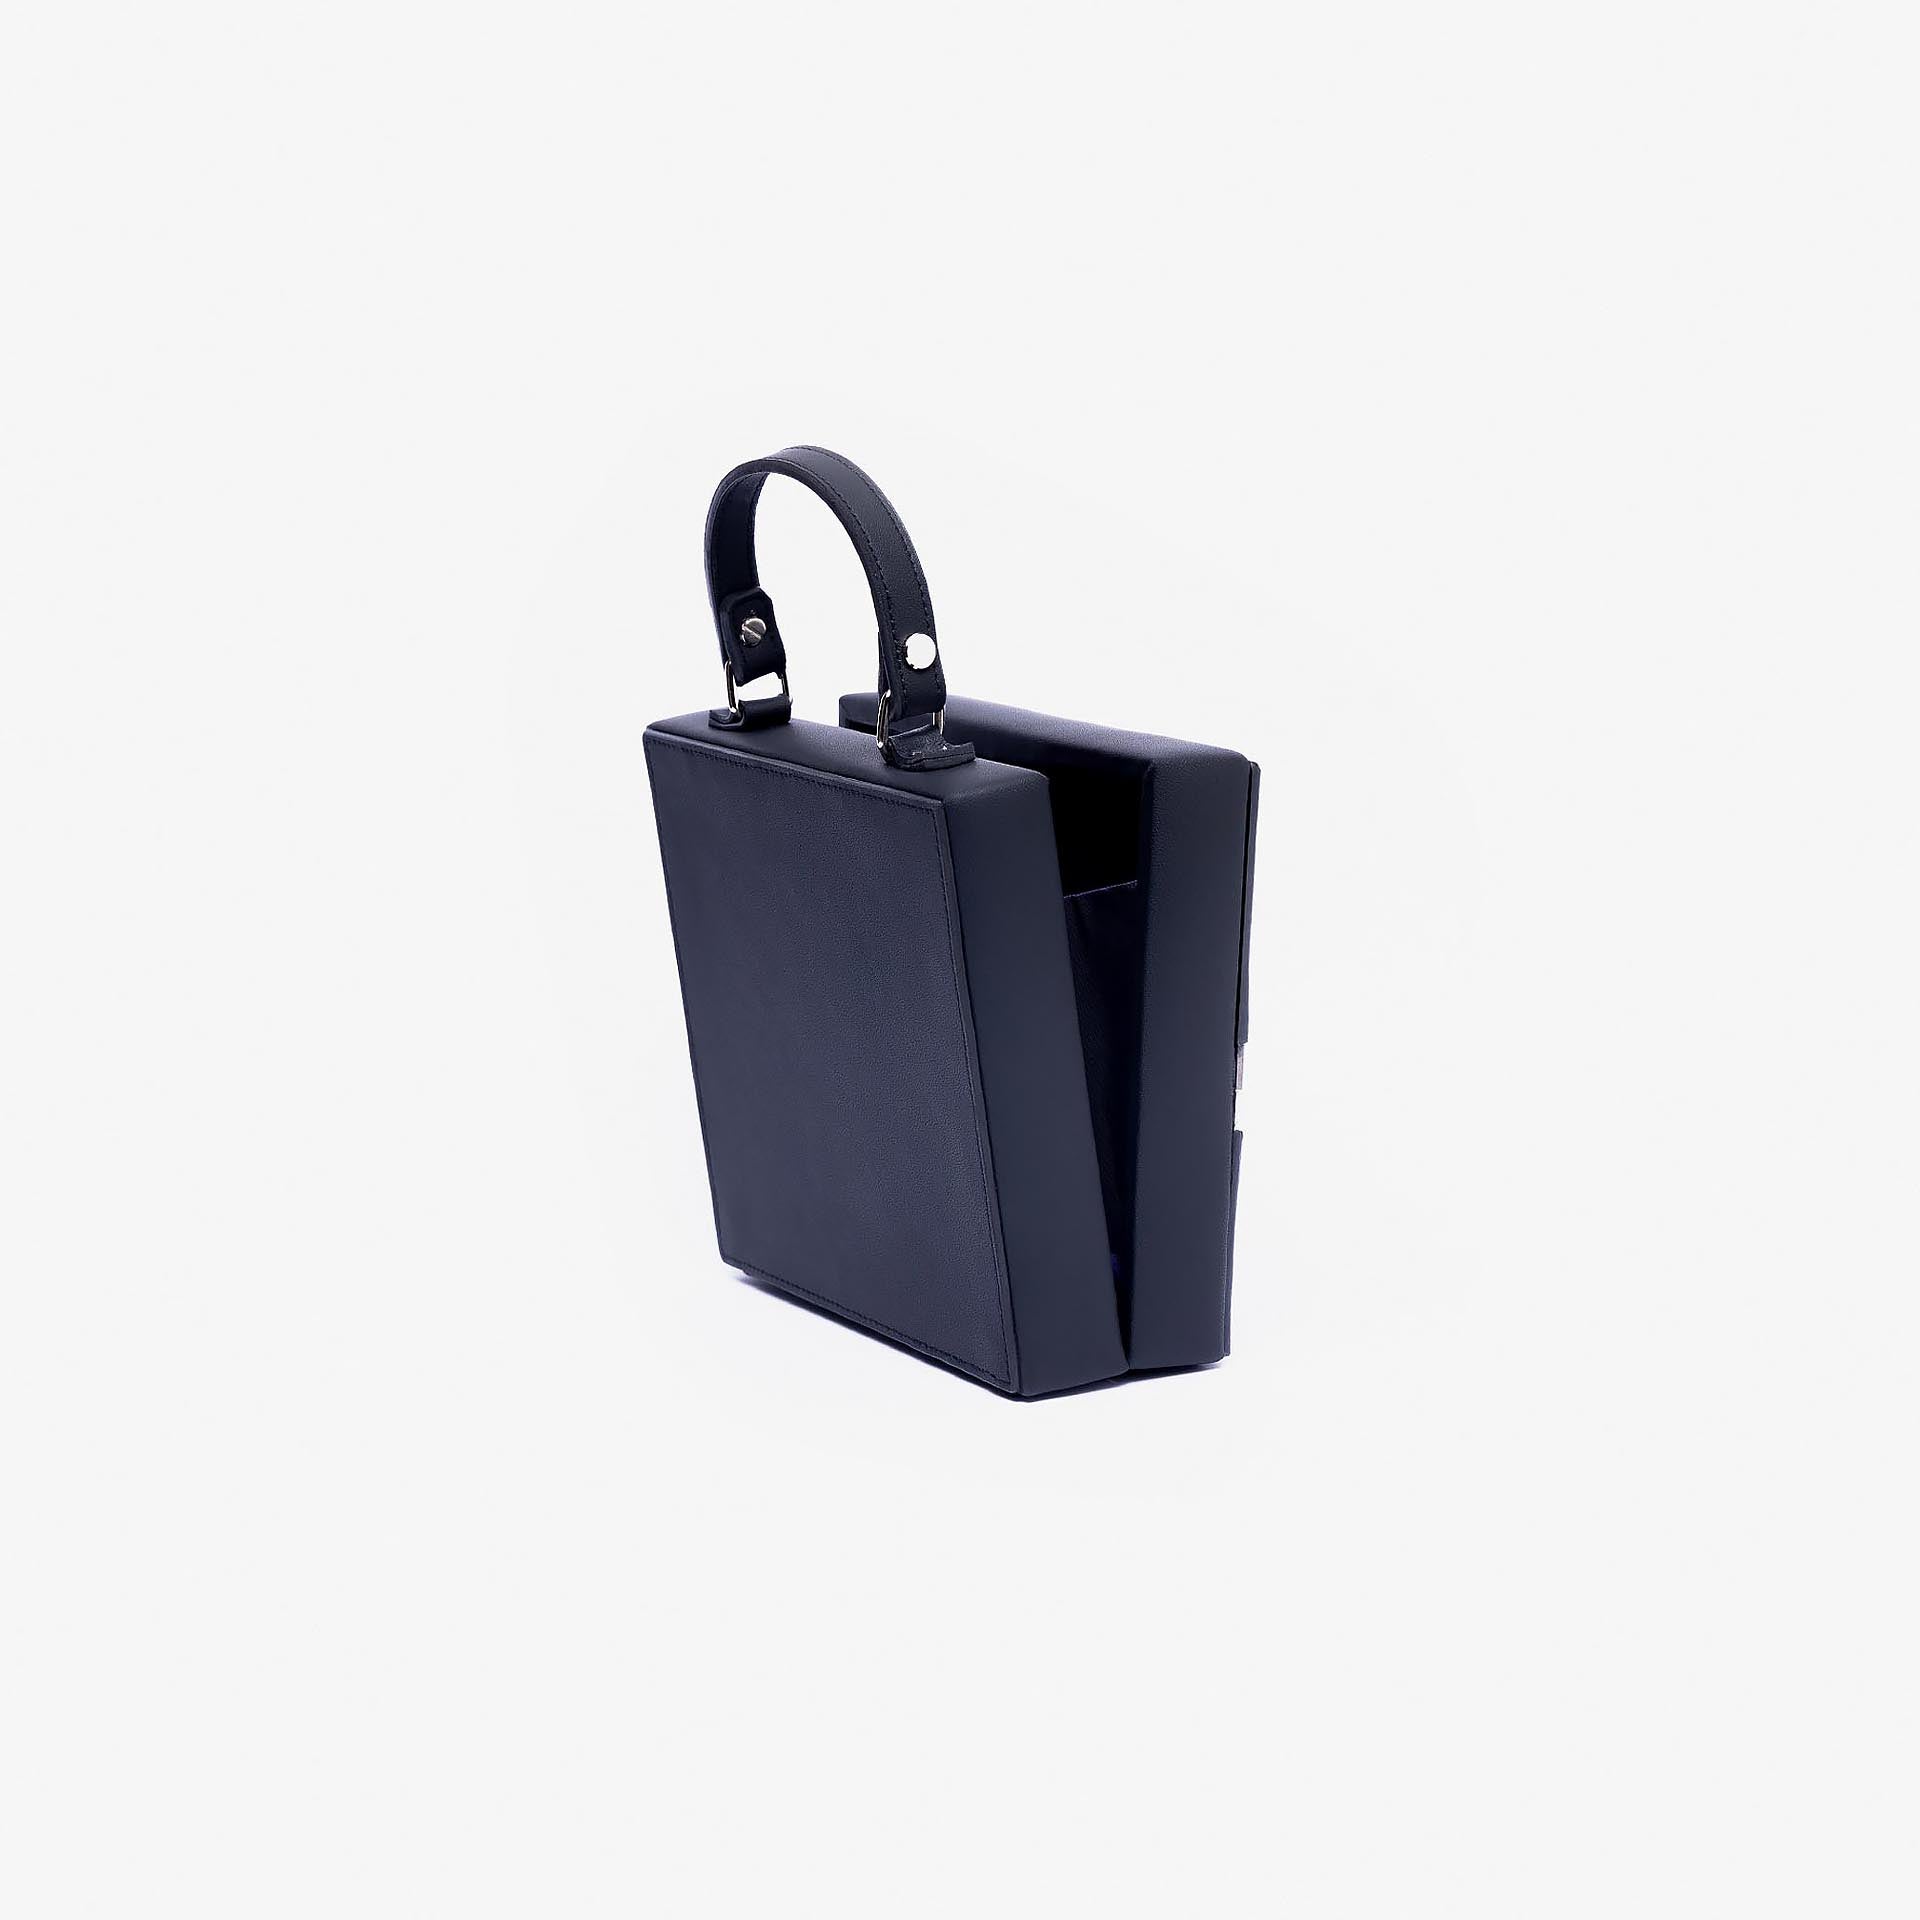 Black Condor S Handbag From KYU